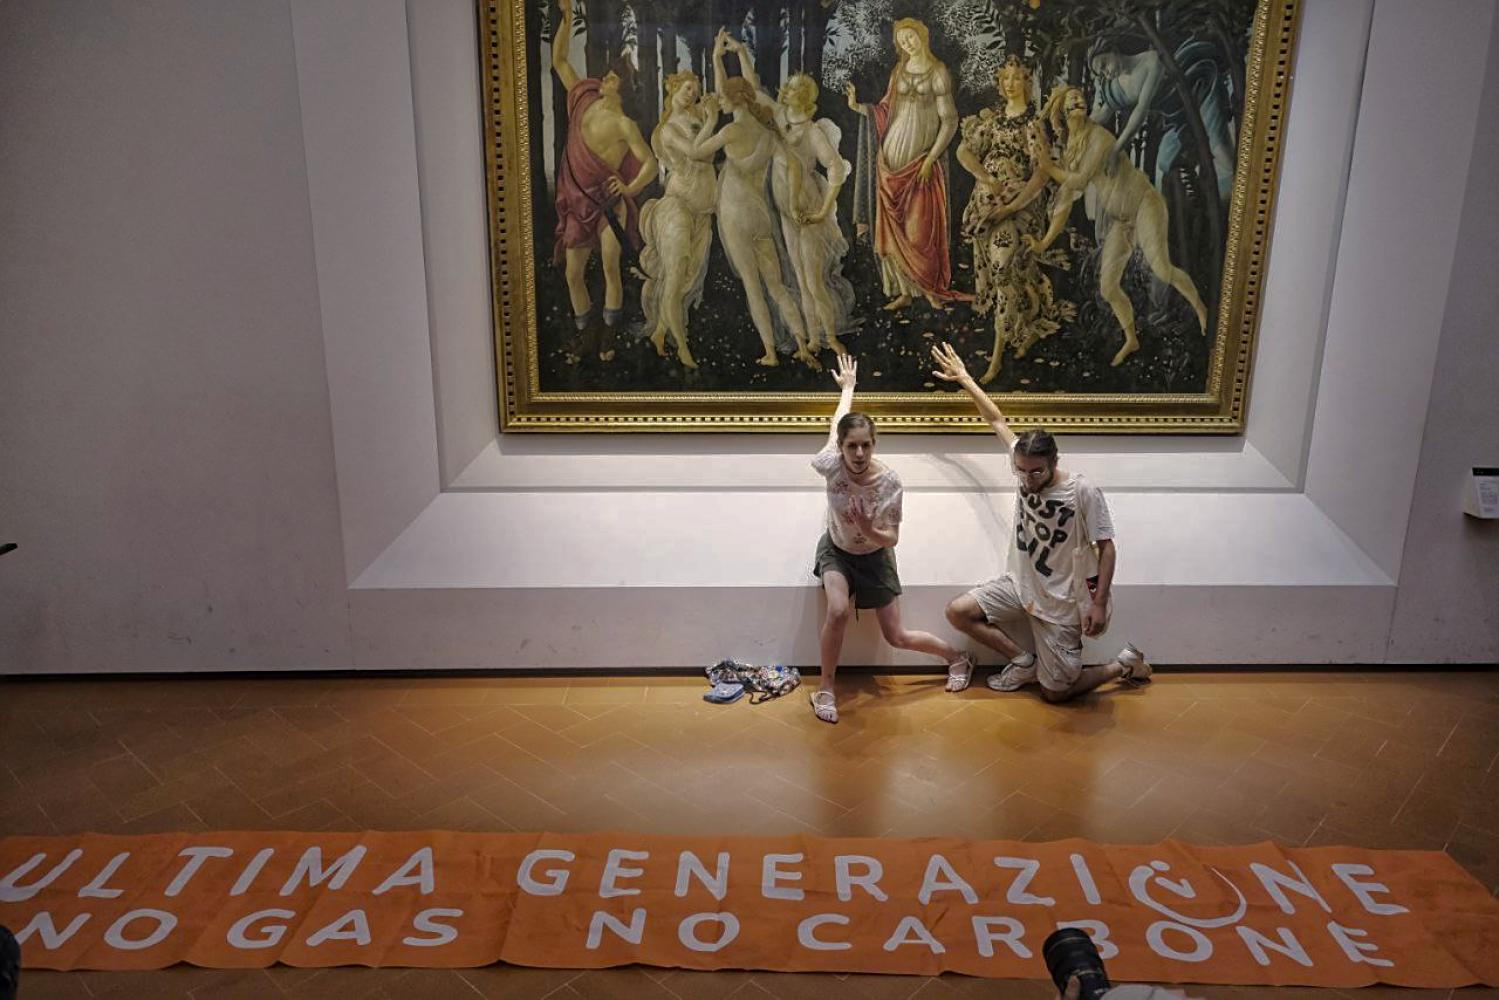 Eine Aktivistin und ein Aktivist der Bewegung Letzte Generation haben ihre Hände in den Uffizien in Florenz an das Botticelli-Gemälde "Frühling" geklebt